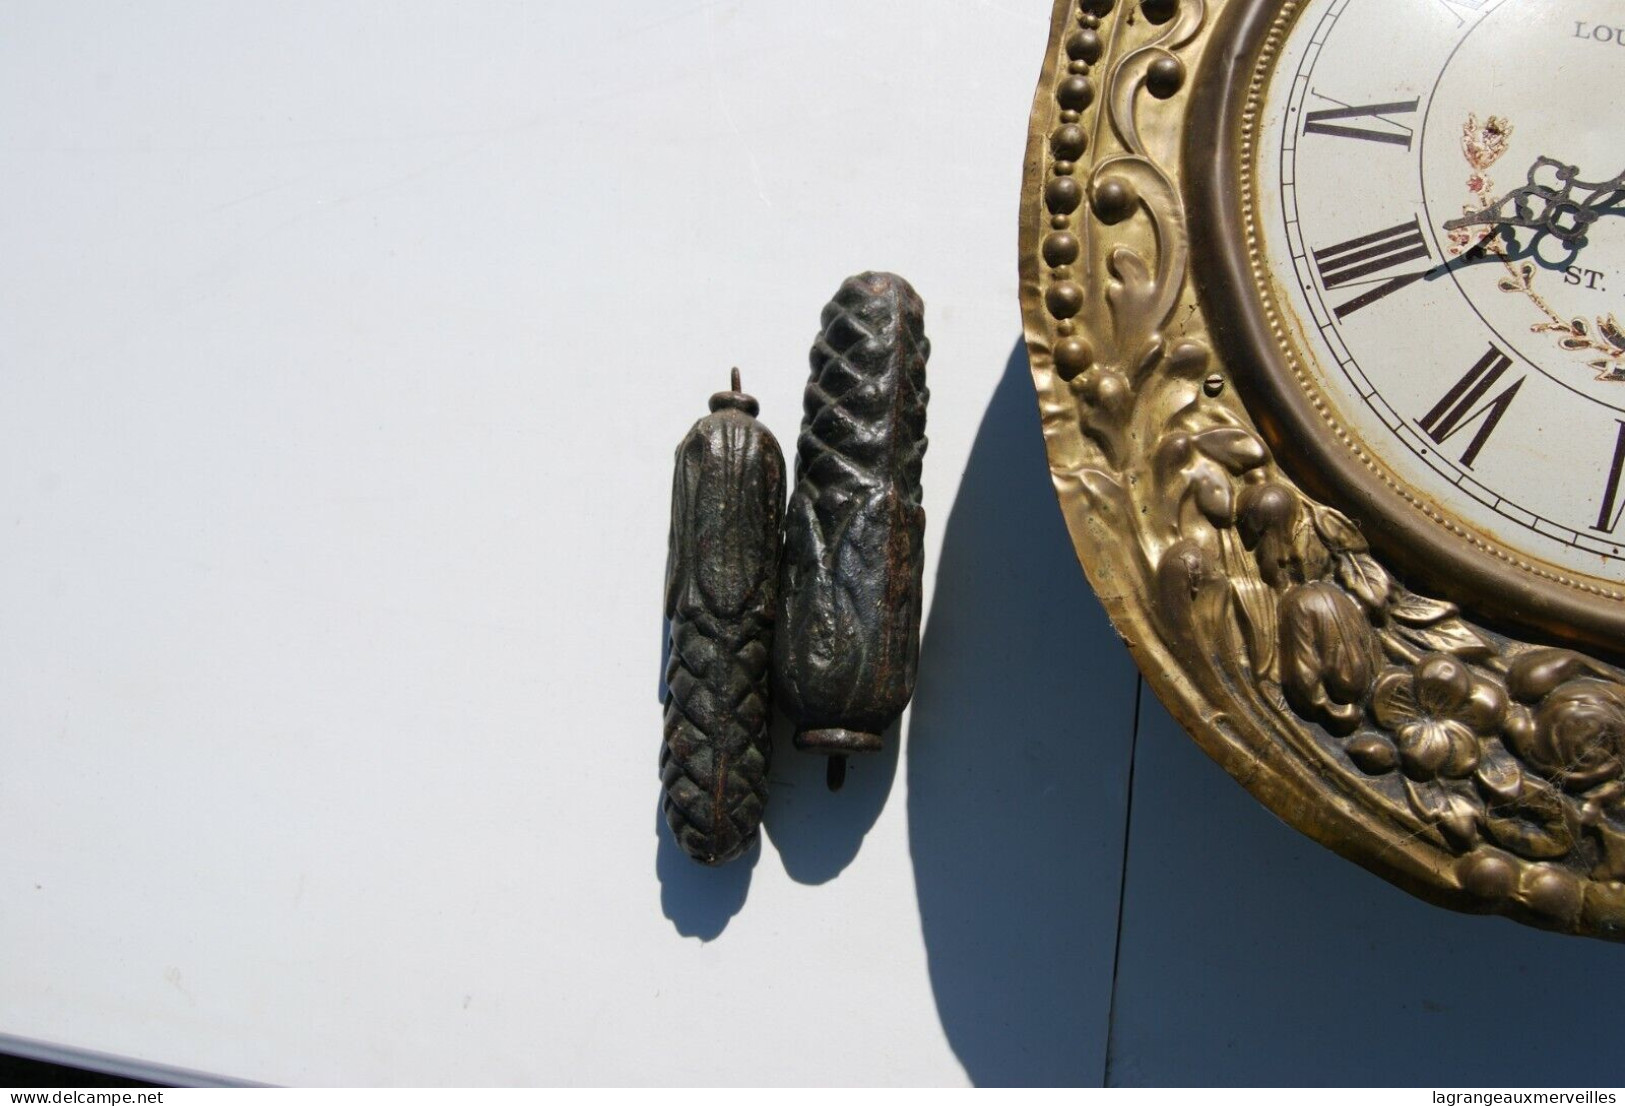 E1 Très Ancienne Horloge Avec Poids - Louis Jaquine - St Etienne - France - Orologi Da Muro